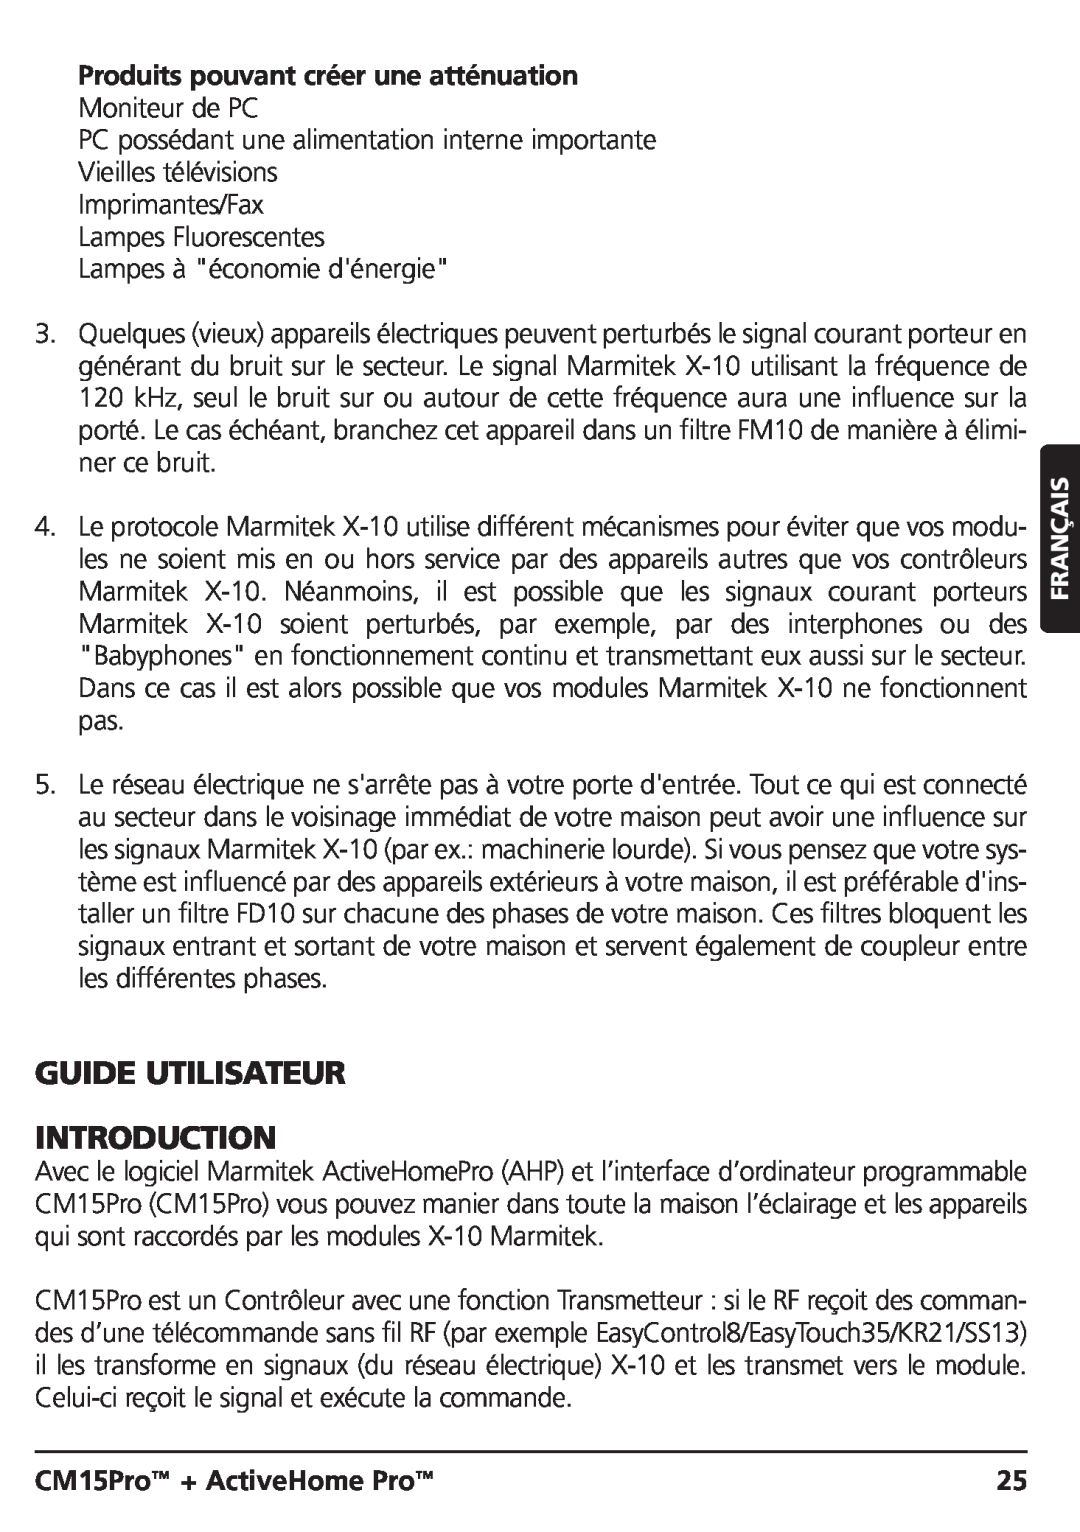 Marmitek CM15PRO manual Guide Utilisateur Introduction, Produits pouvant créer une atténuation, CM15Pro + ActiveHome Pro 